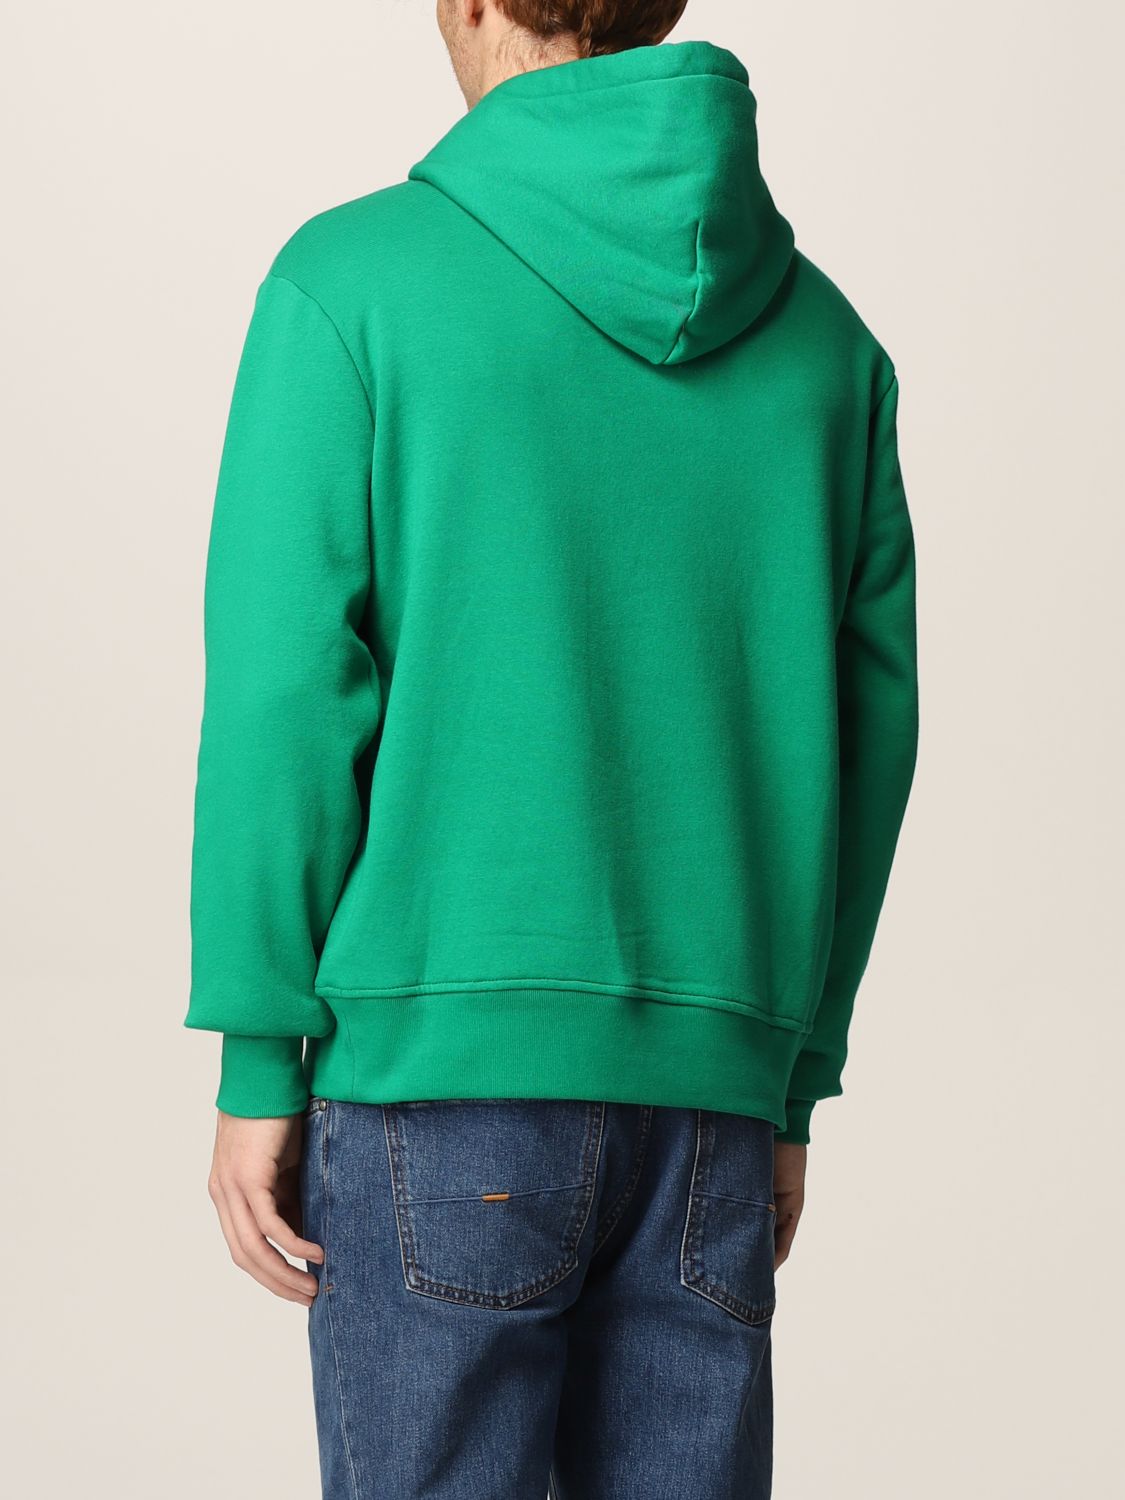 POLO RALPH LAUREN: sweatshirt for men - Green | Polo Ralph Lauren ...